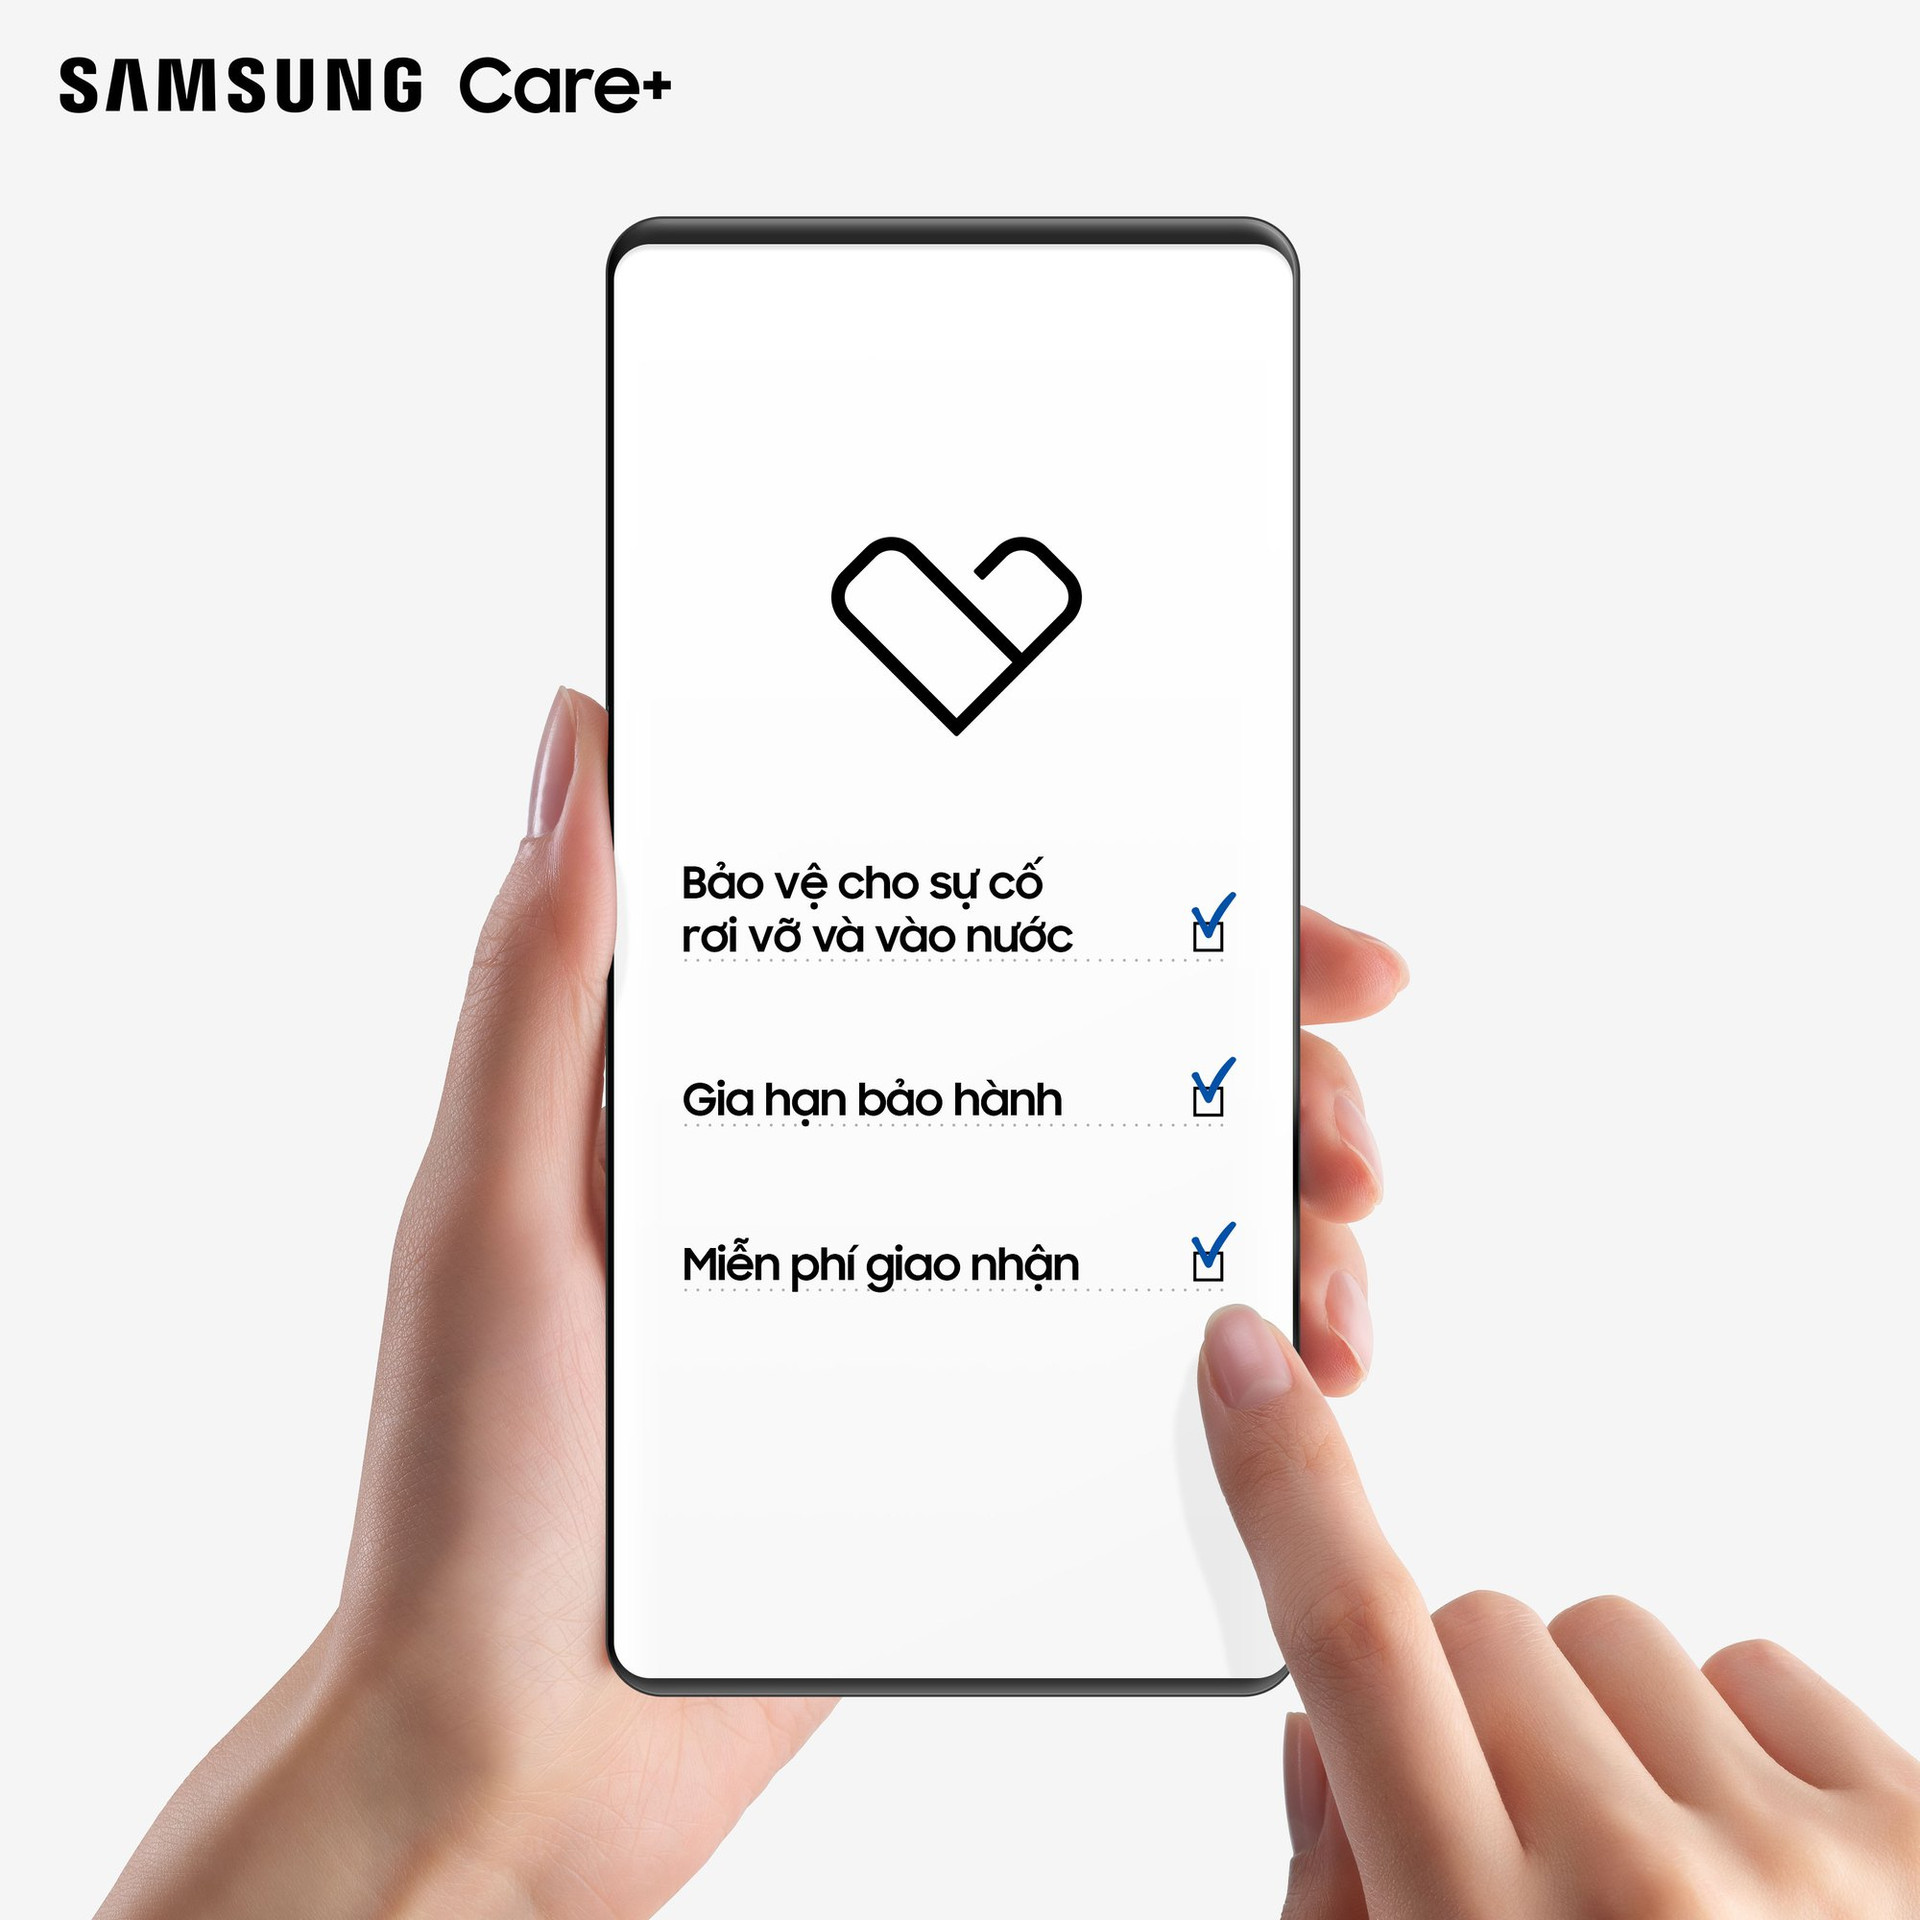 Thêm lựa chọn gói bảo hành cho dịch vụ Samsung Care+  - Ảnh 1.